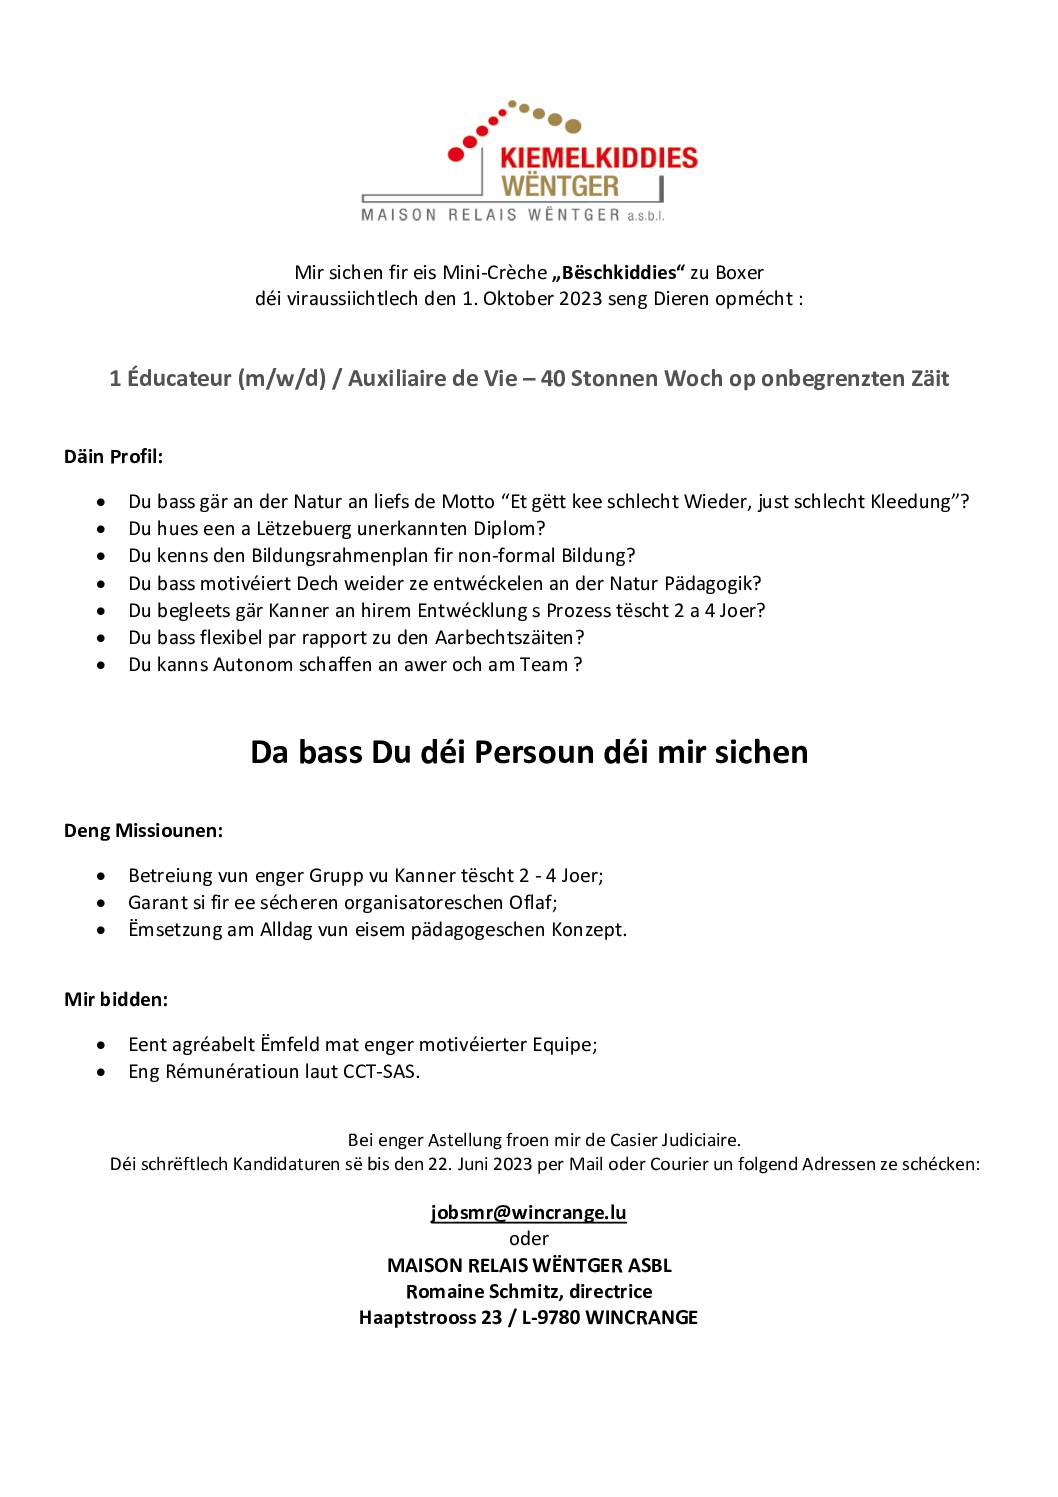 La Maison Relais Wëntger recrute: 1 éducateur / auxiliaire de vie (m/w/d) pour la mini-crèche à Boxhorn